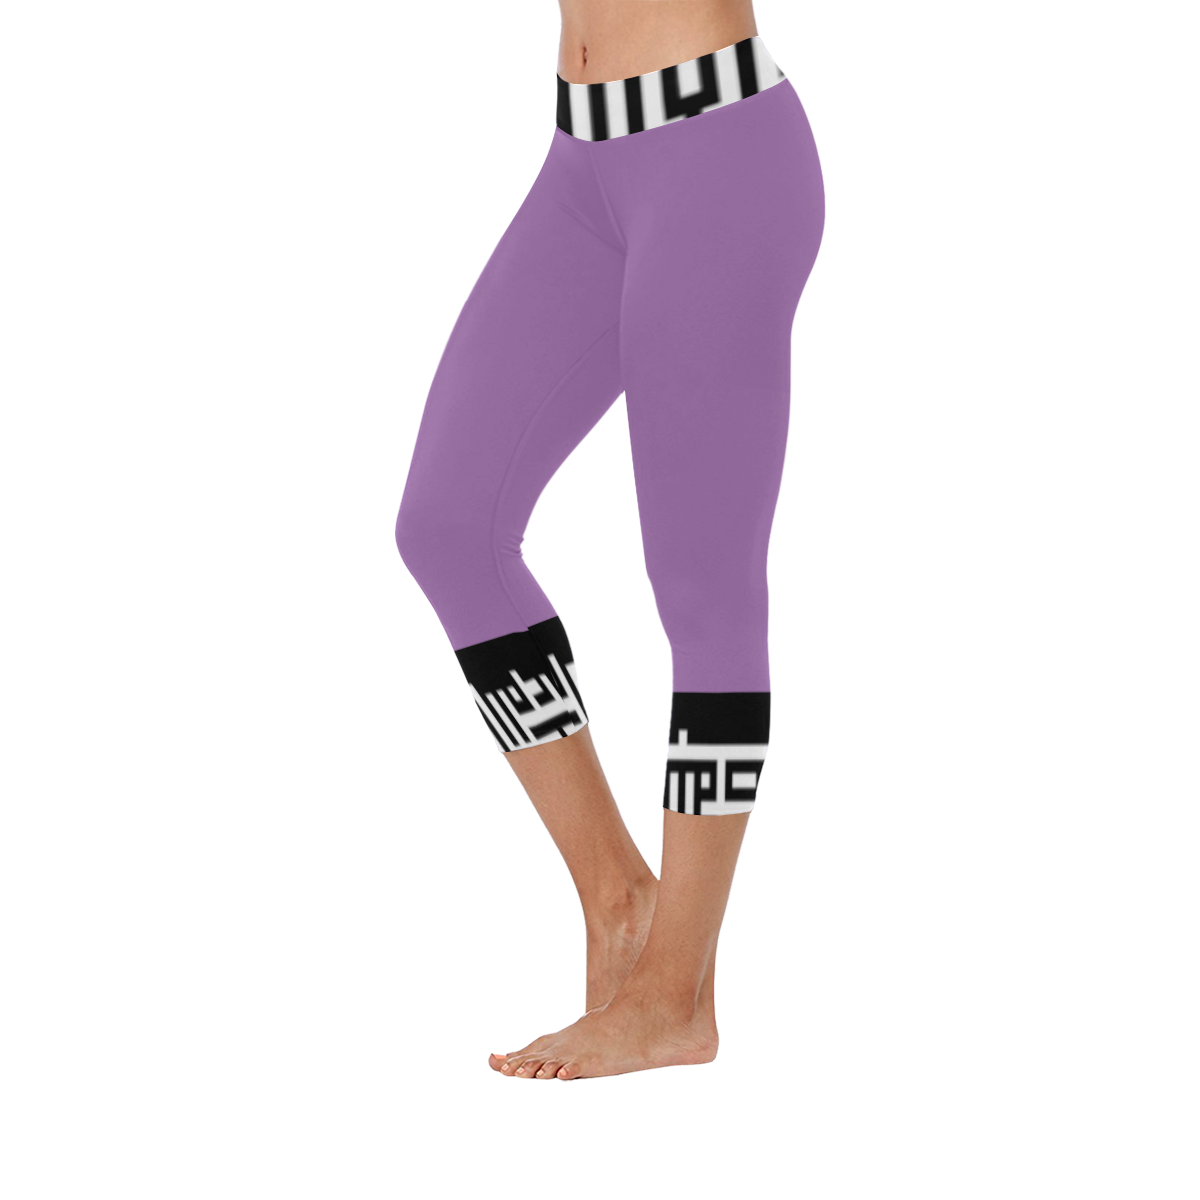 M1caprilegw0013 Women's Low Rise Capri Leggings (Invisible Stitch) (Model L08)